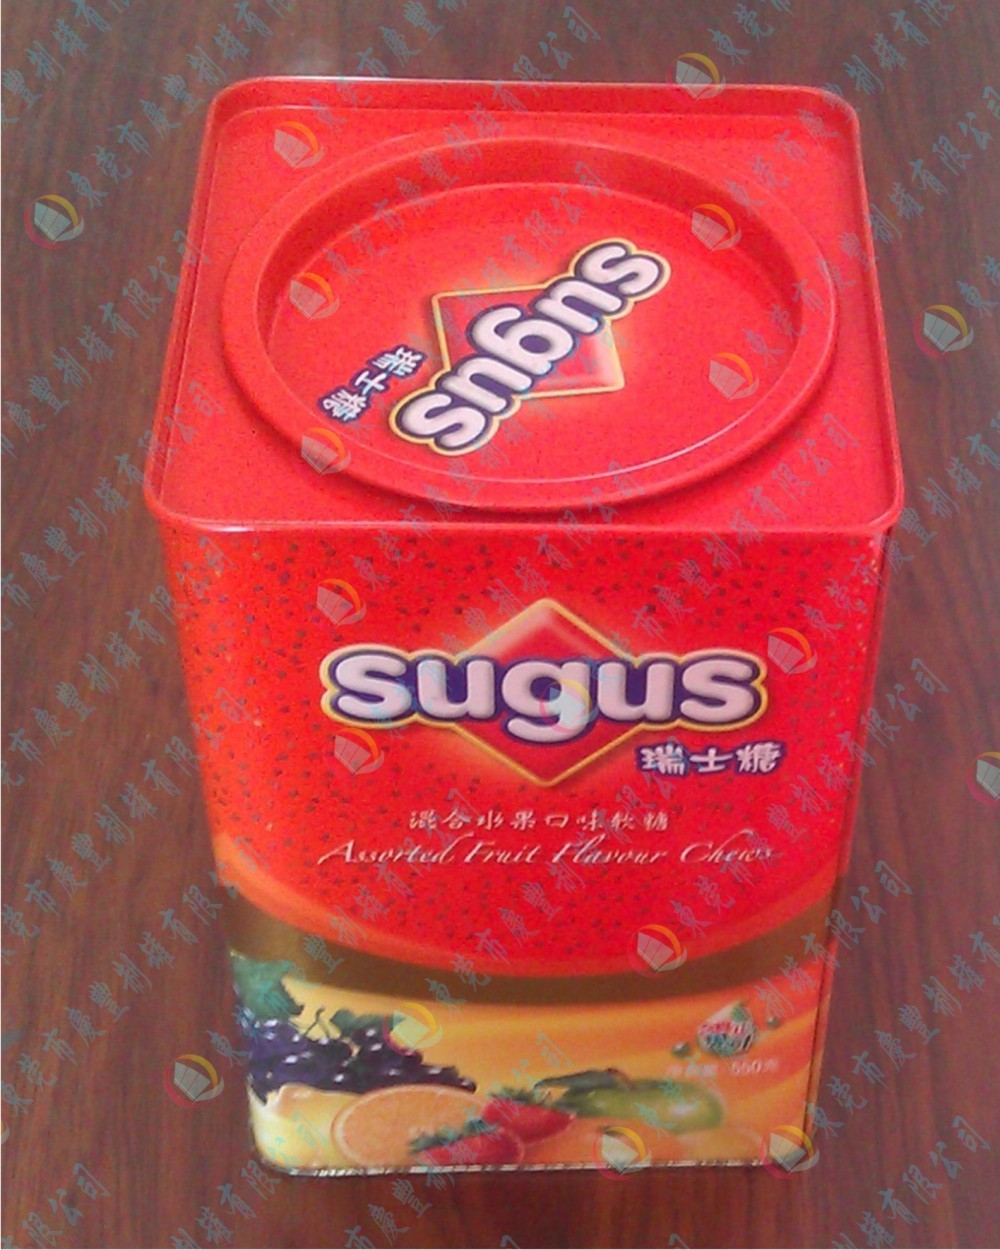 年货糖果罐,马口铁瑞士软糖铁罐,混合水果口味糖果罐